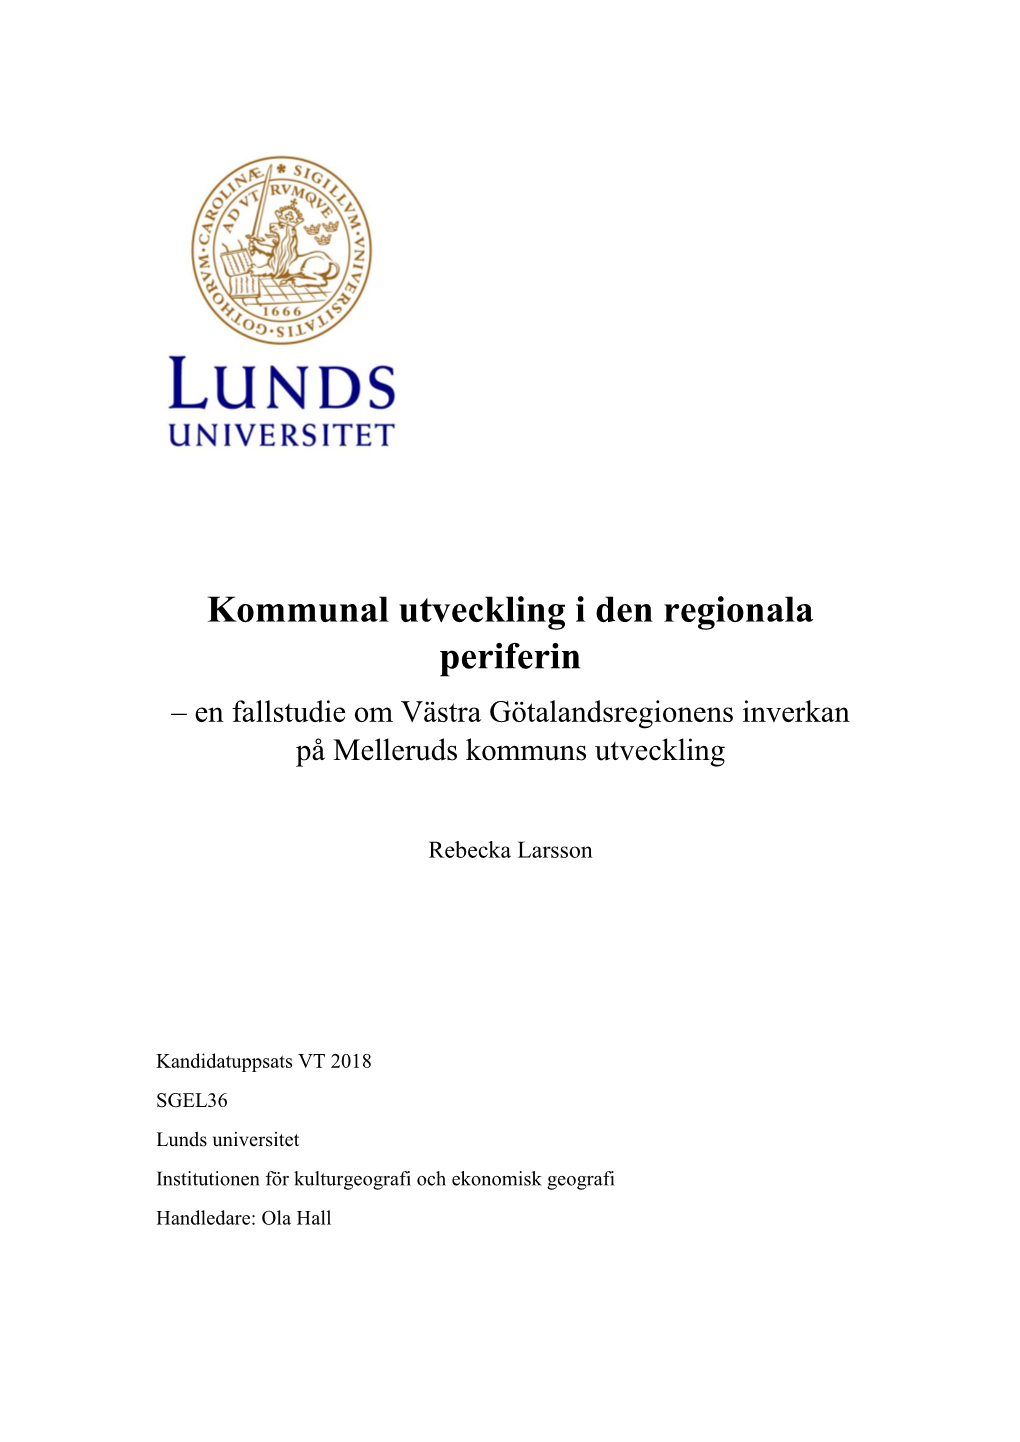 Kommunal Utveckling I Den Regionala Periferin – En Fallstudie Om Västra Götalandsregionens Inverkan På Melleruds Kommuns Utveckling